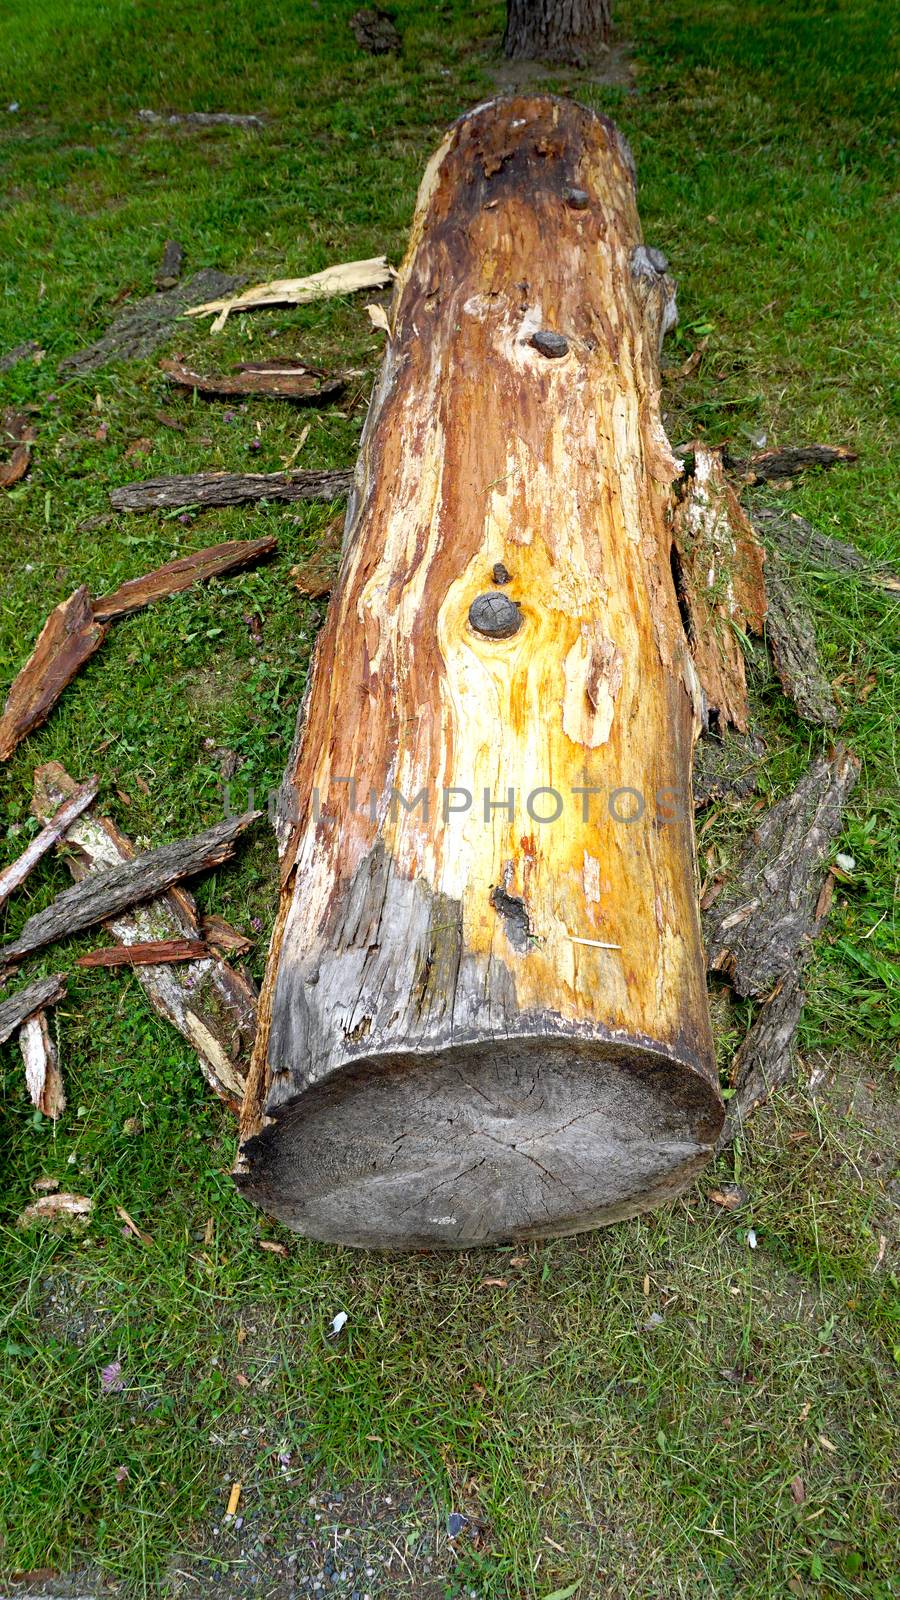 wooden log firewood on the grass field vertical